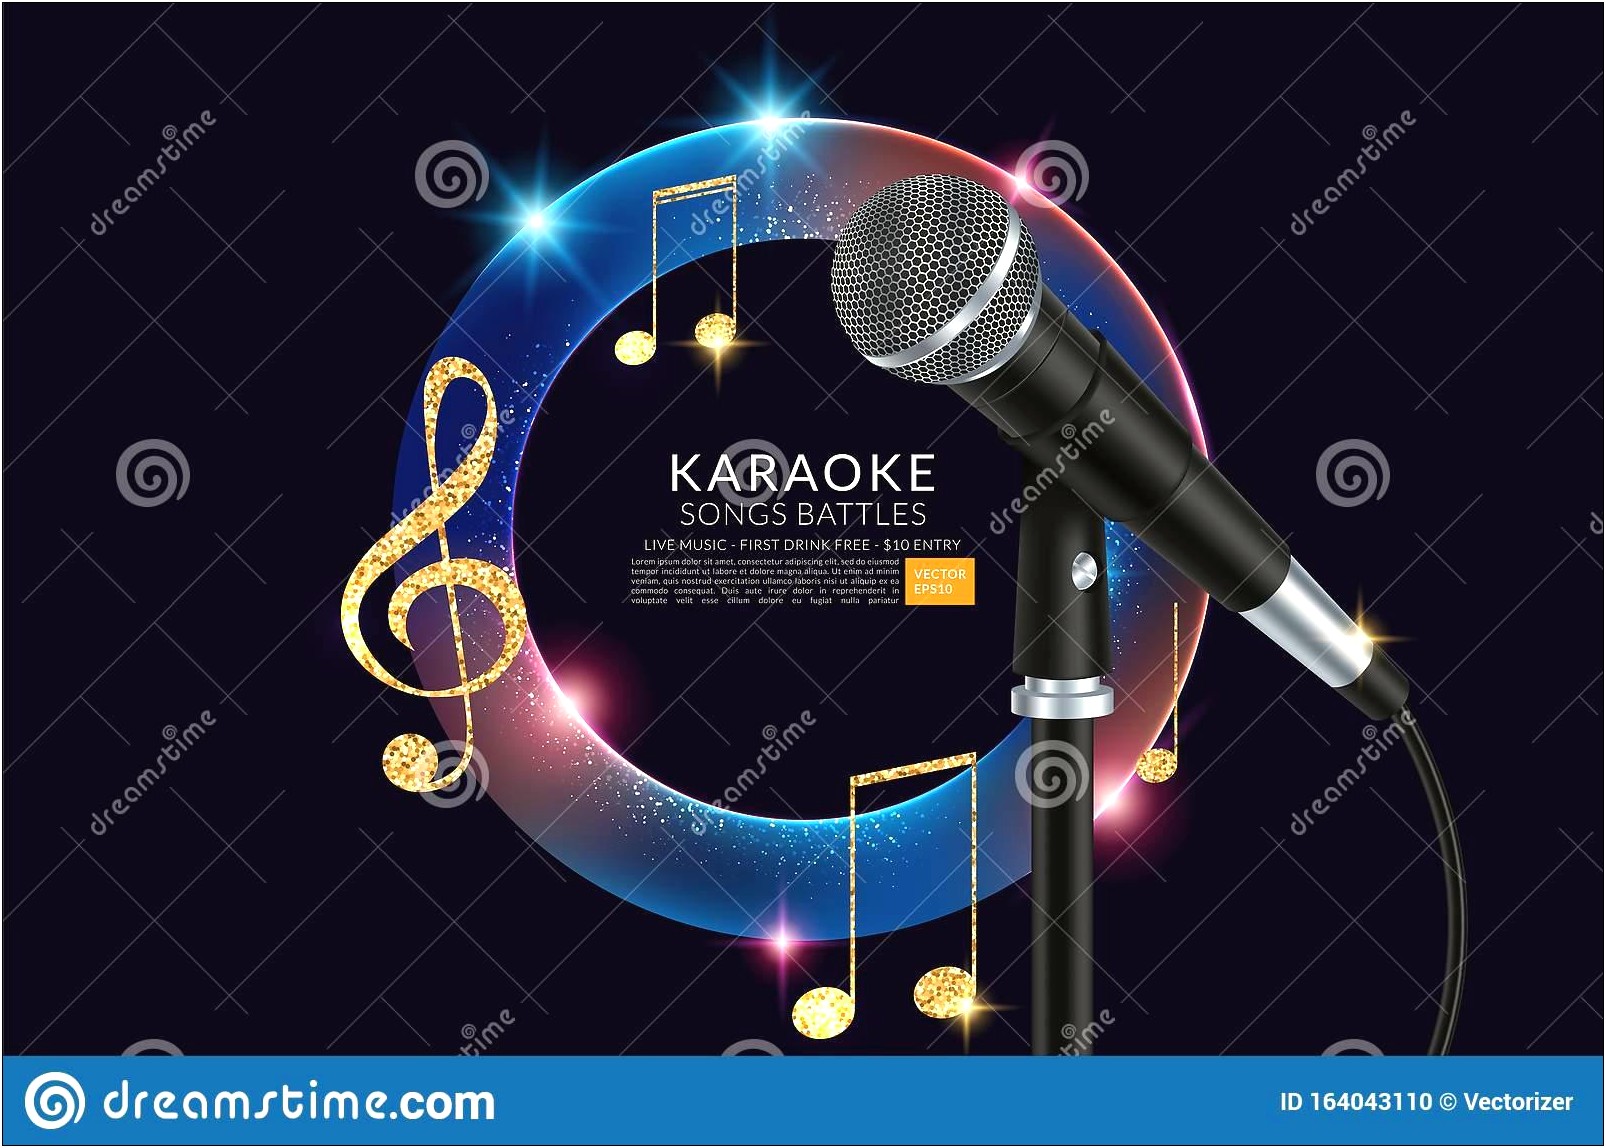 Karaoke Night Flyer Template Free Download